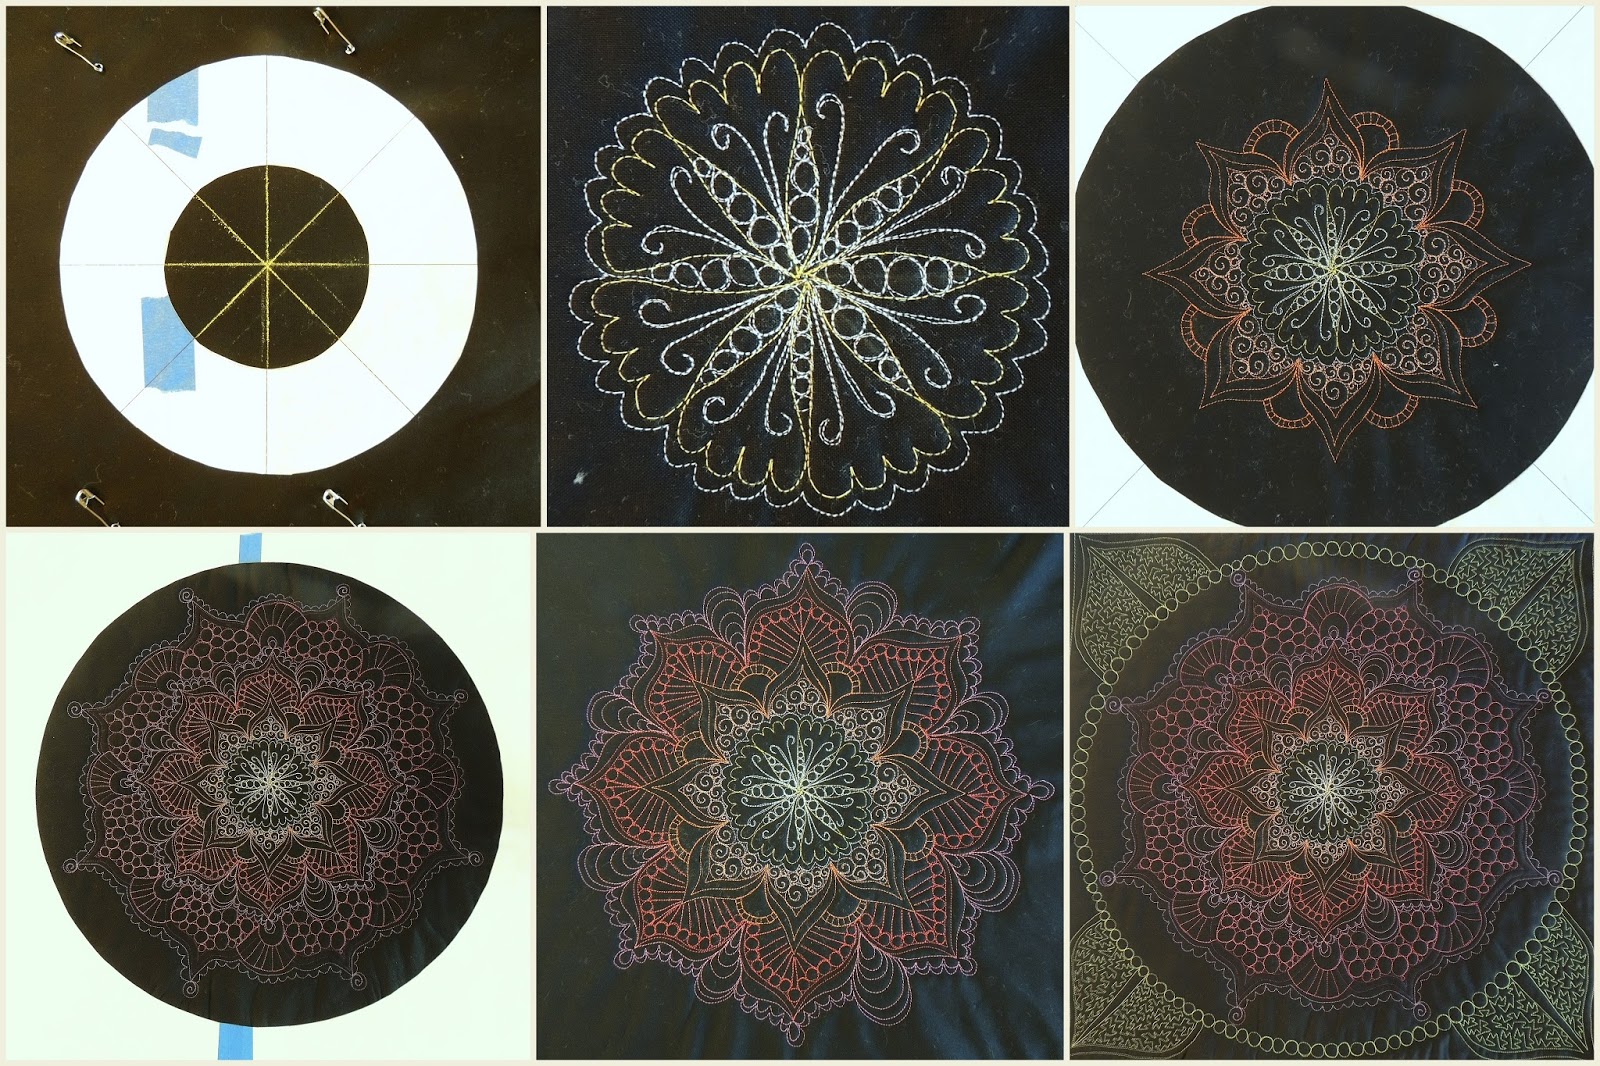 Mandala 42: Geometric Cross Stitch Pattern